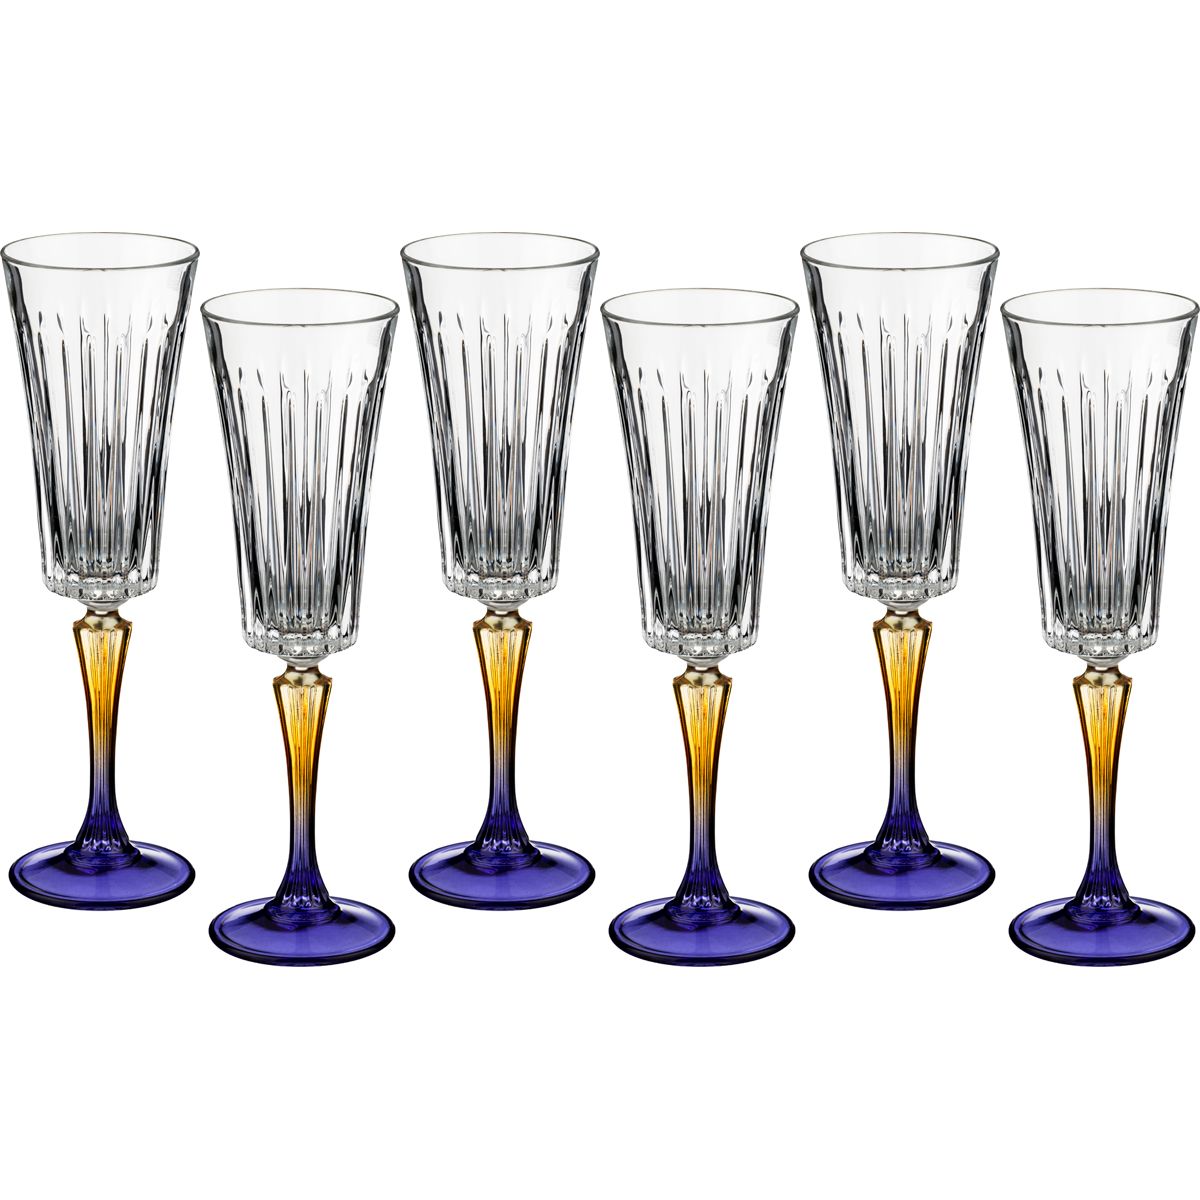 Набор бокалов для шампанского Gipsy, 6 шт., 210 мл, 24 см, Стекло, RCR, Италия